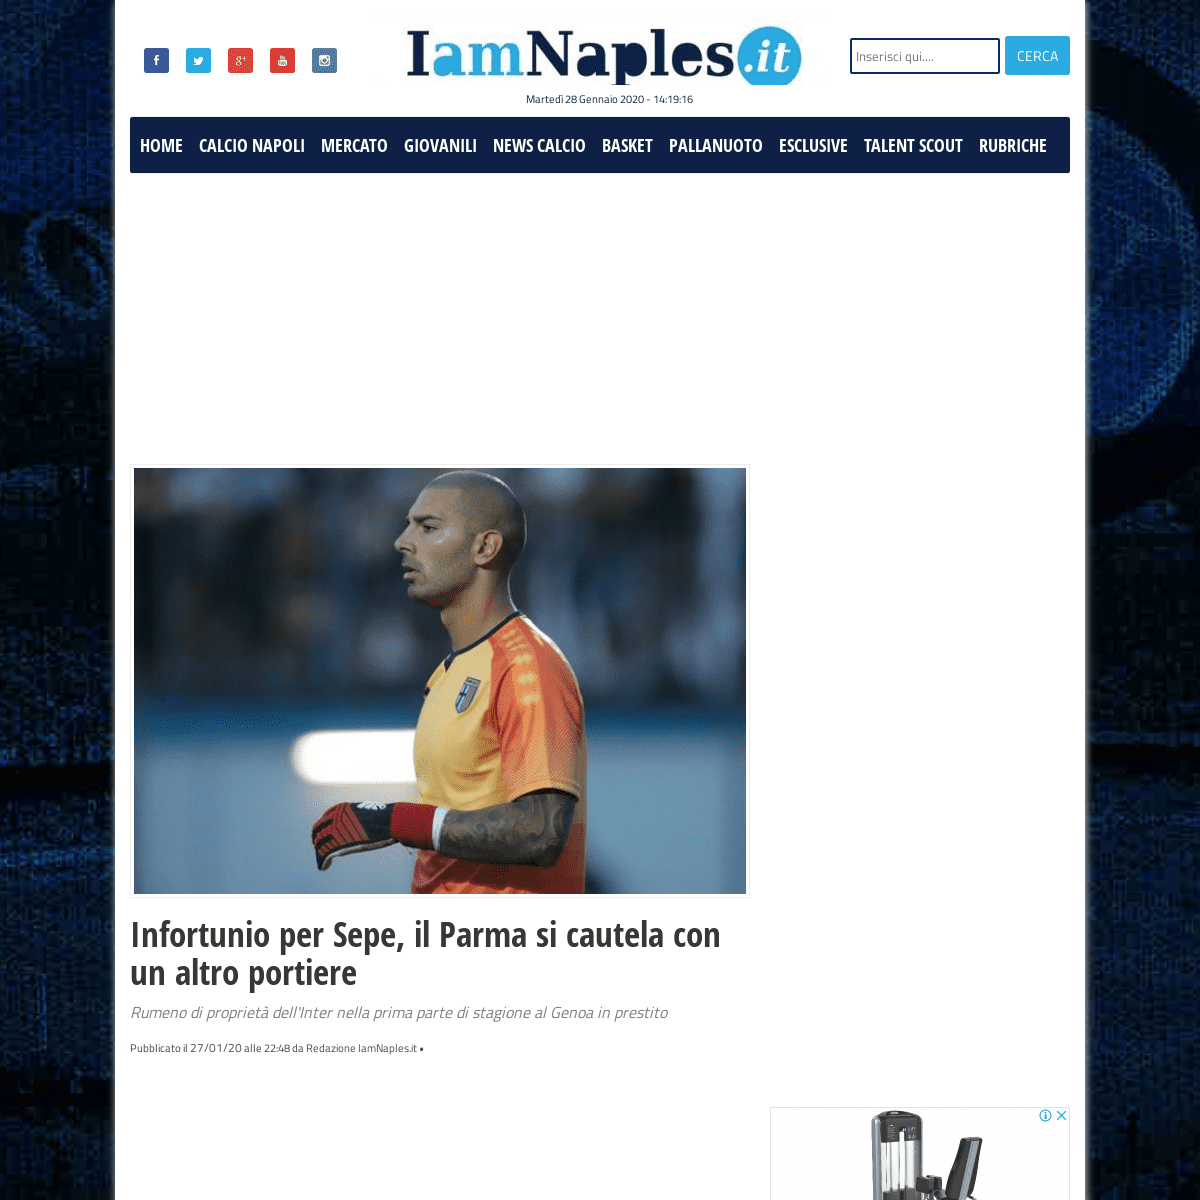 A complete backup of www.iamnaples.it/notizie-calcio-napoli/infortunio-per-sepe-il-parma-si-cautela-con-un-altro-portiere/